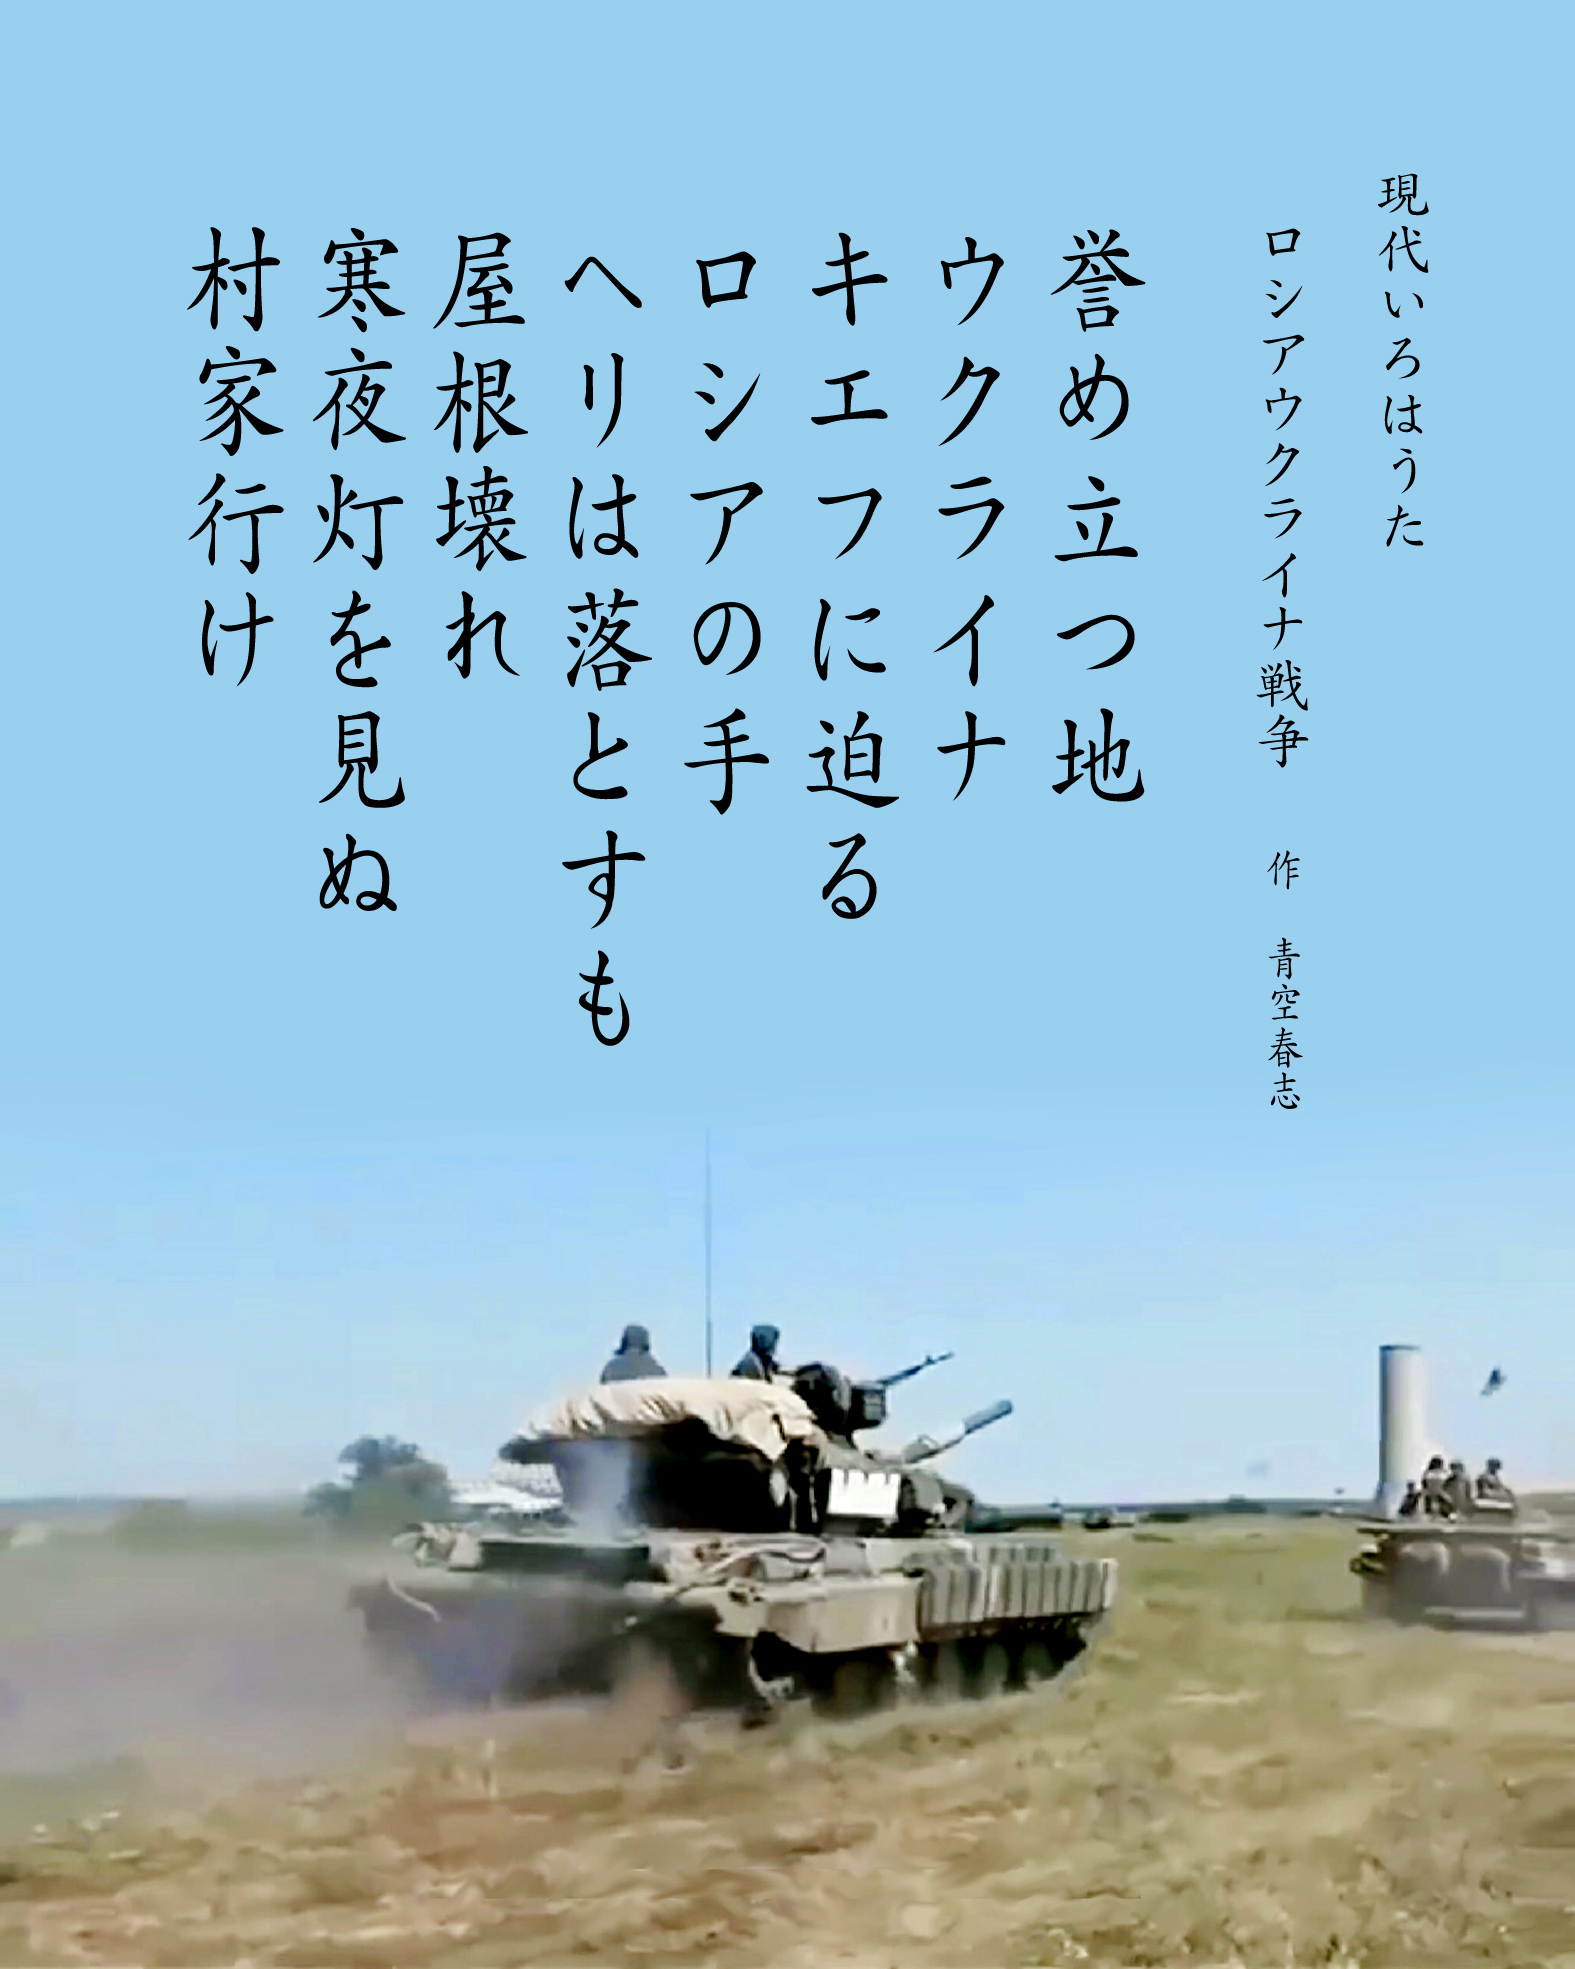 パングラム　現代いろはうた　現代いろは歌　ロシアウクライナ戦争　Japanese Pangrams